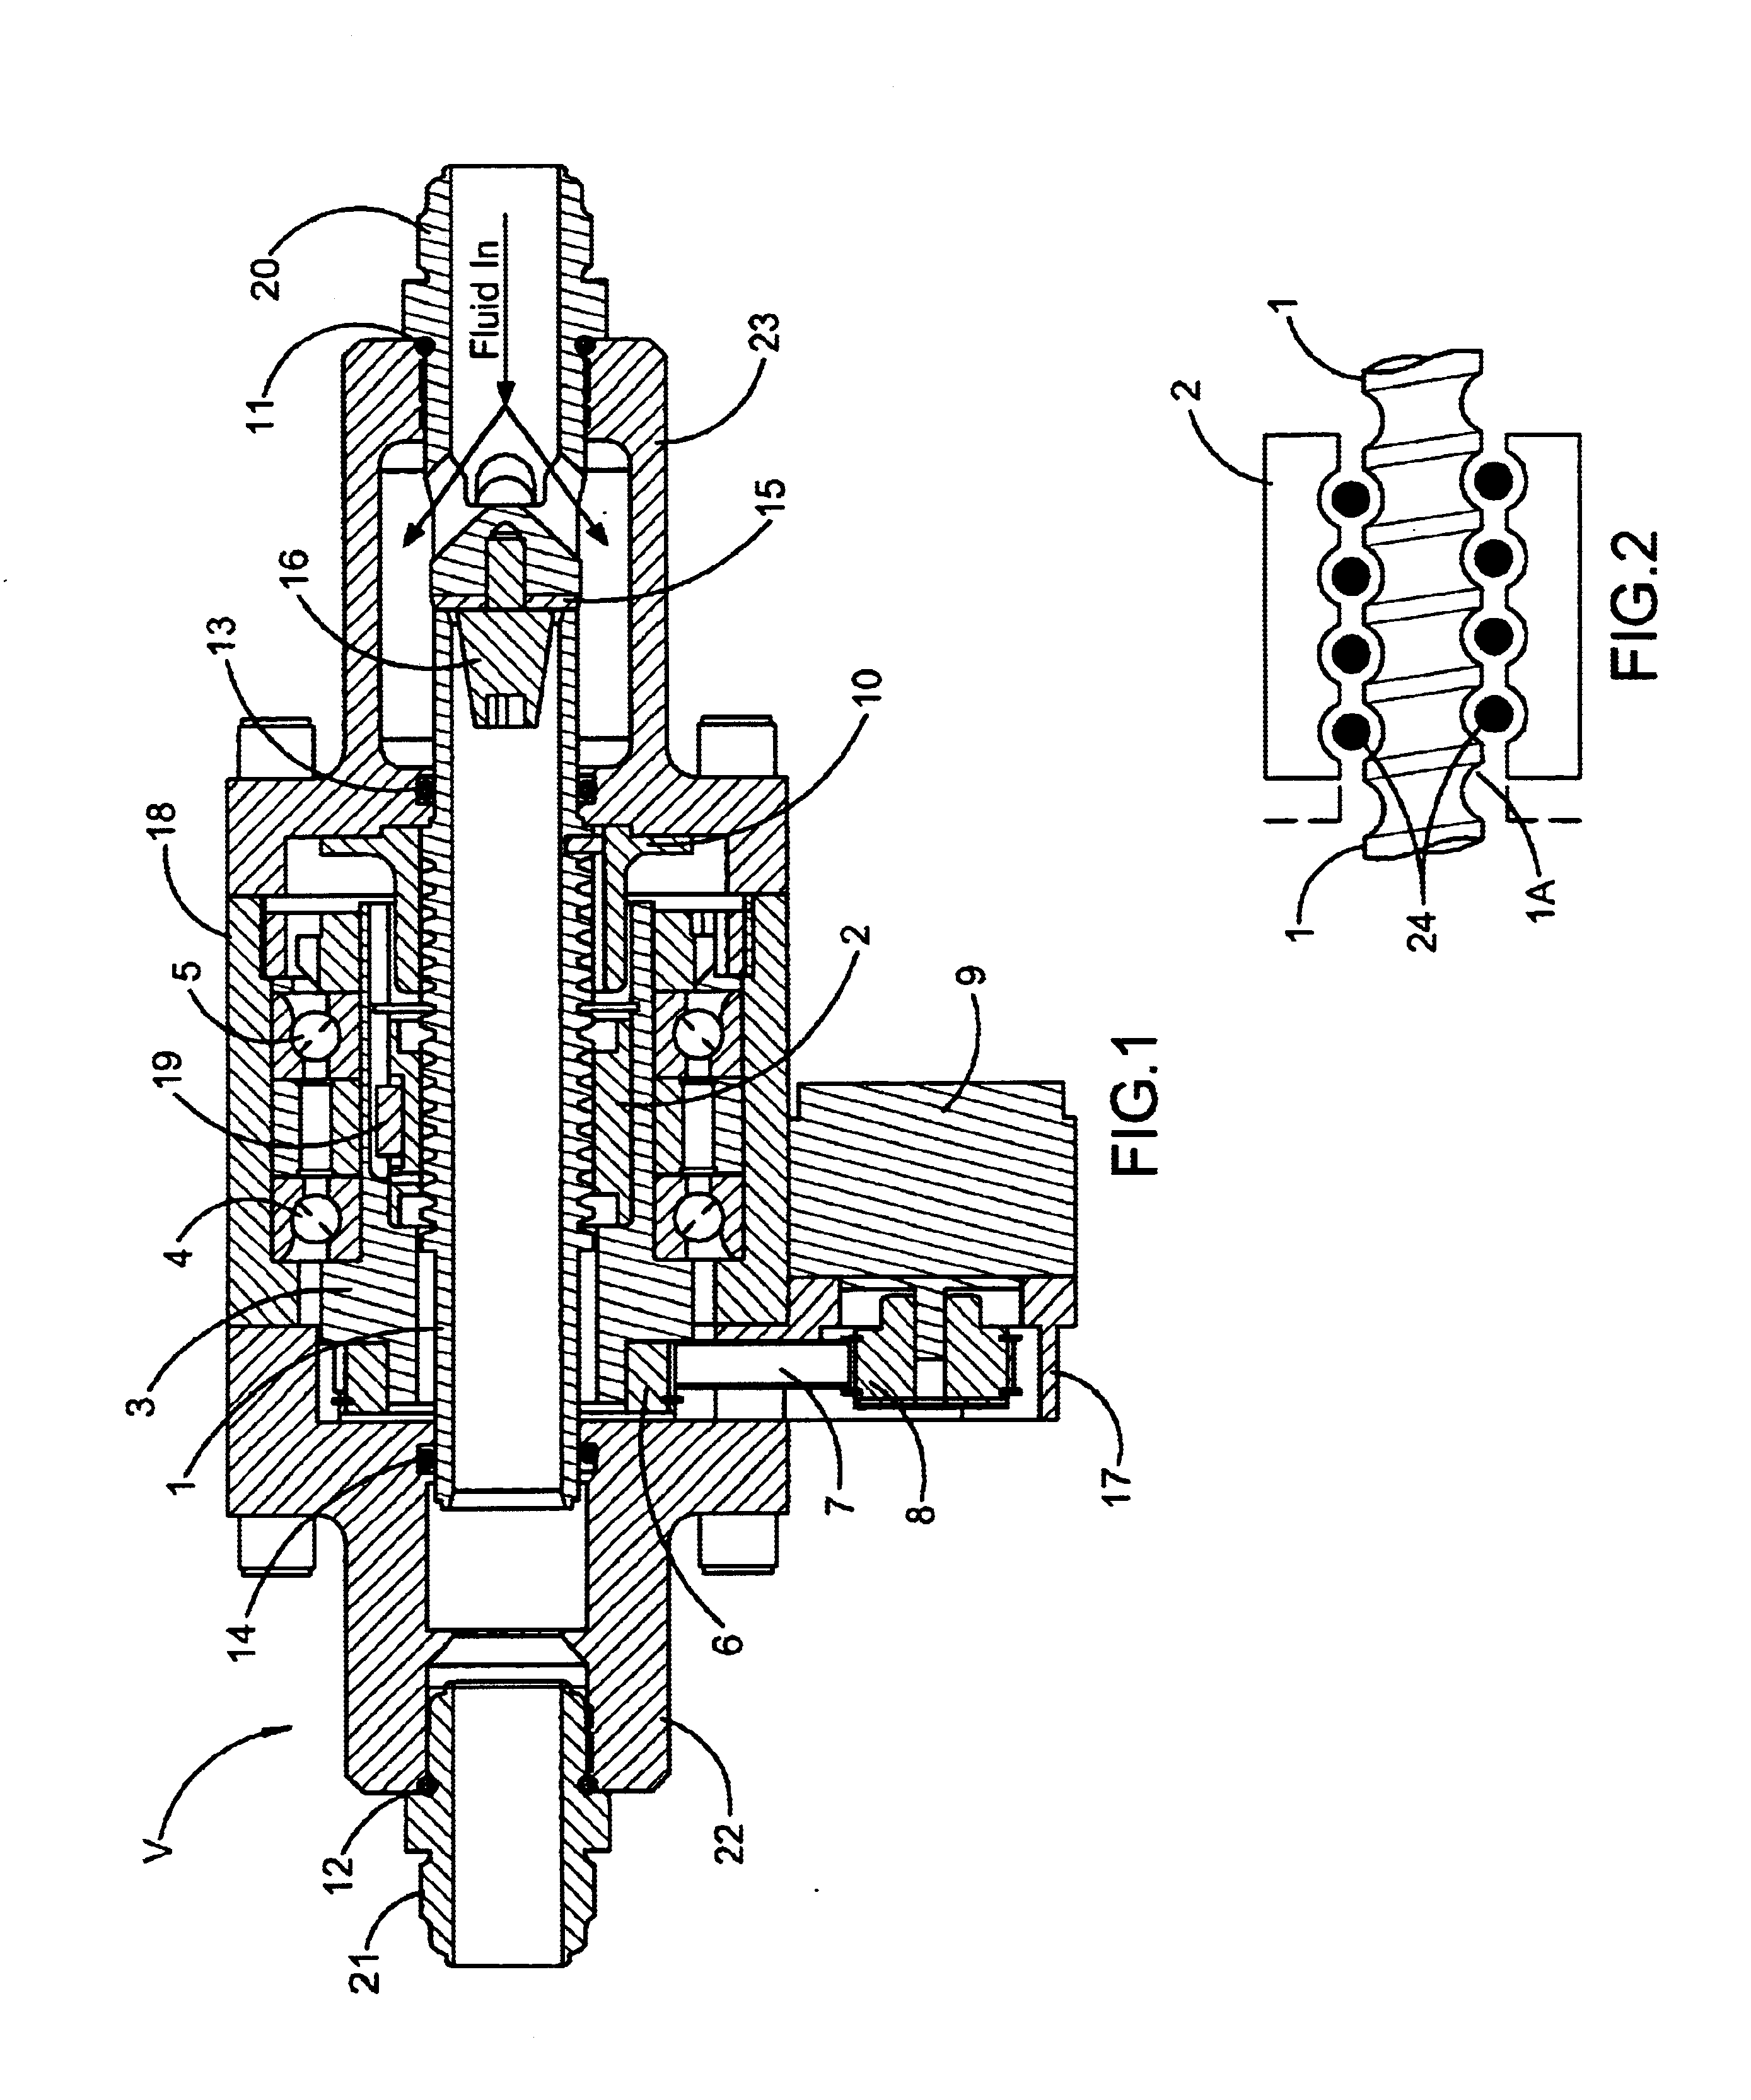 Electro-mechanical coaxial valve